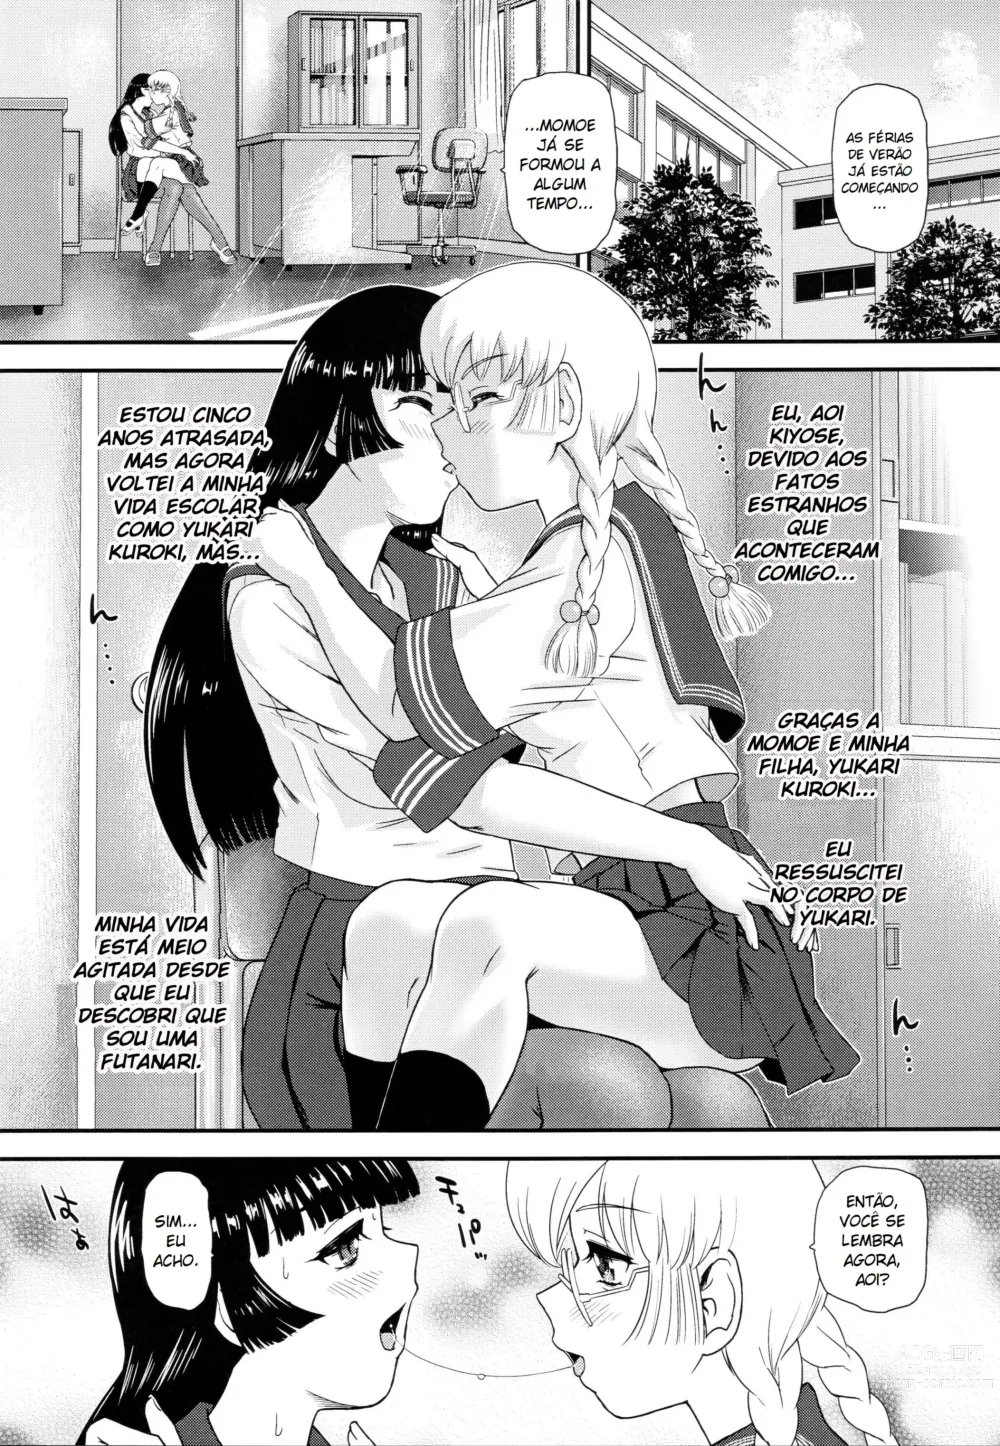 Page 3 of doujinshi A Vida Escolar De Uma Futanari